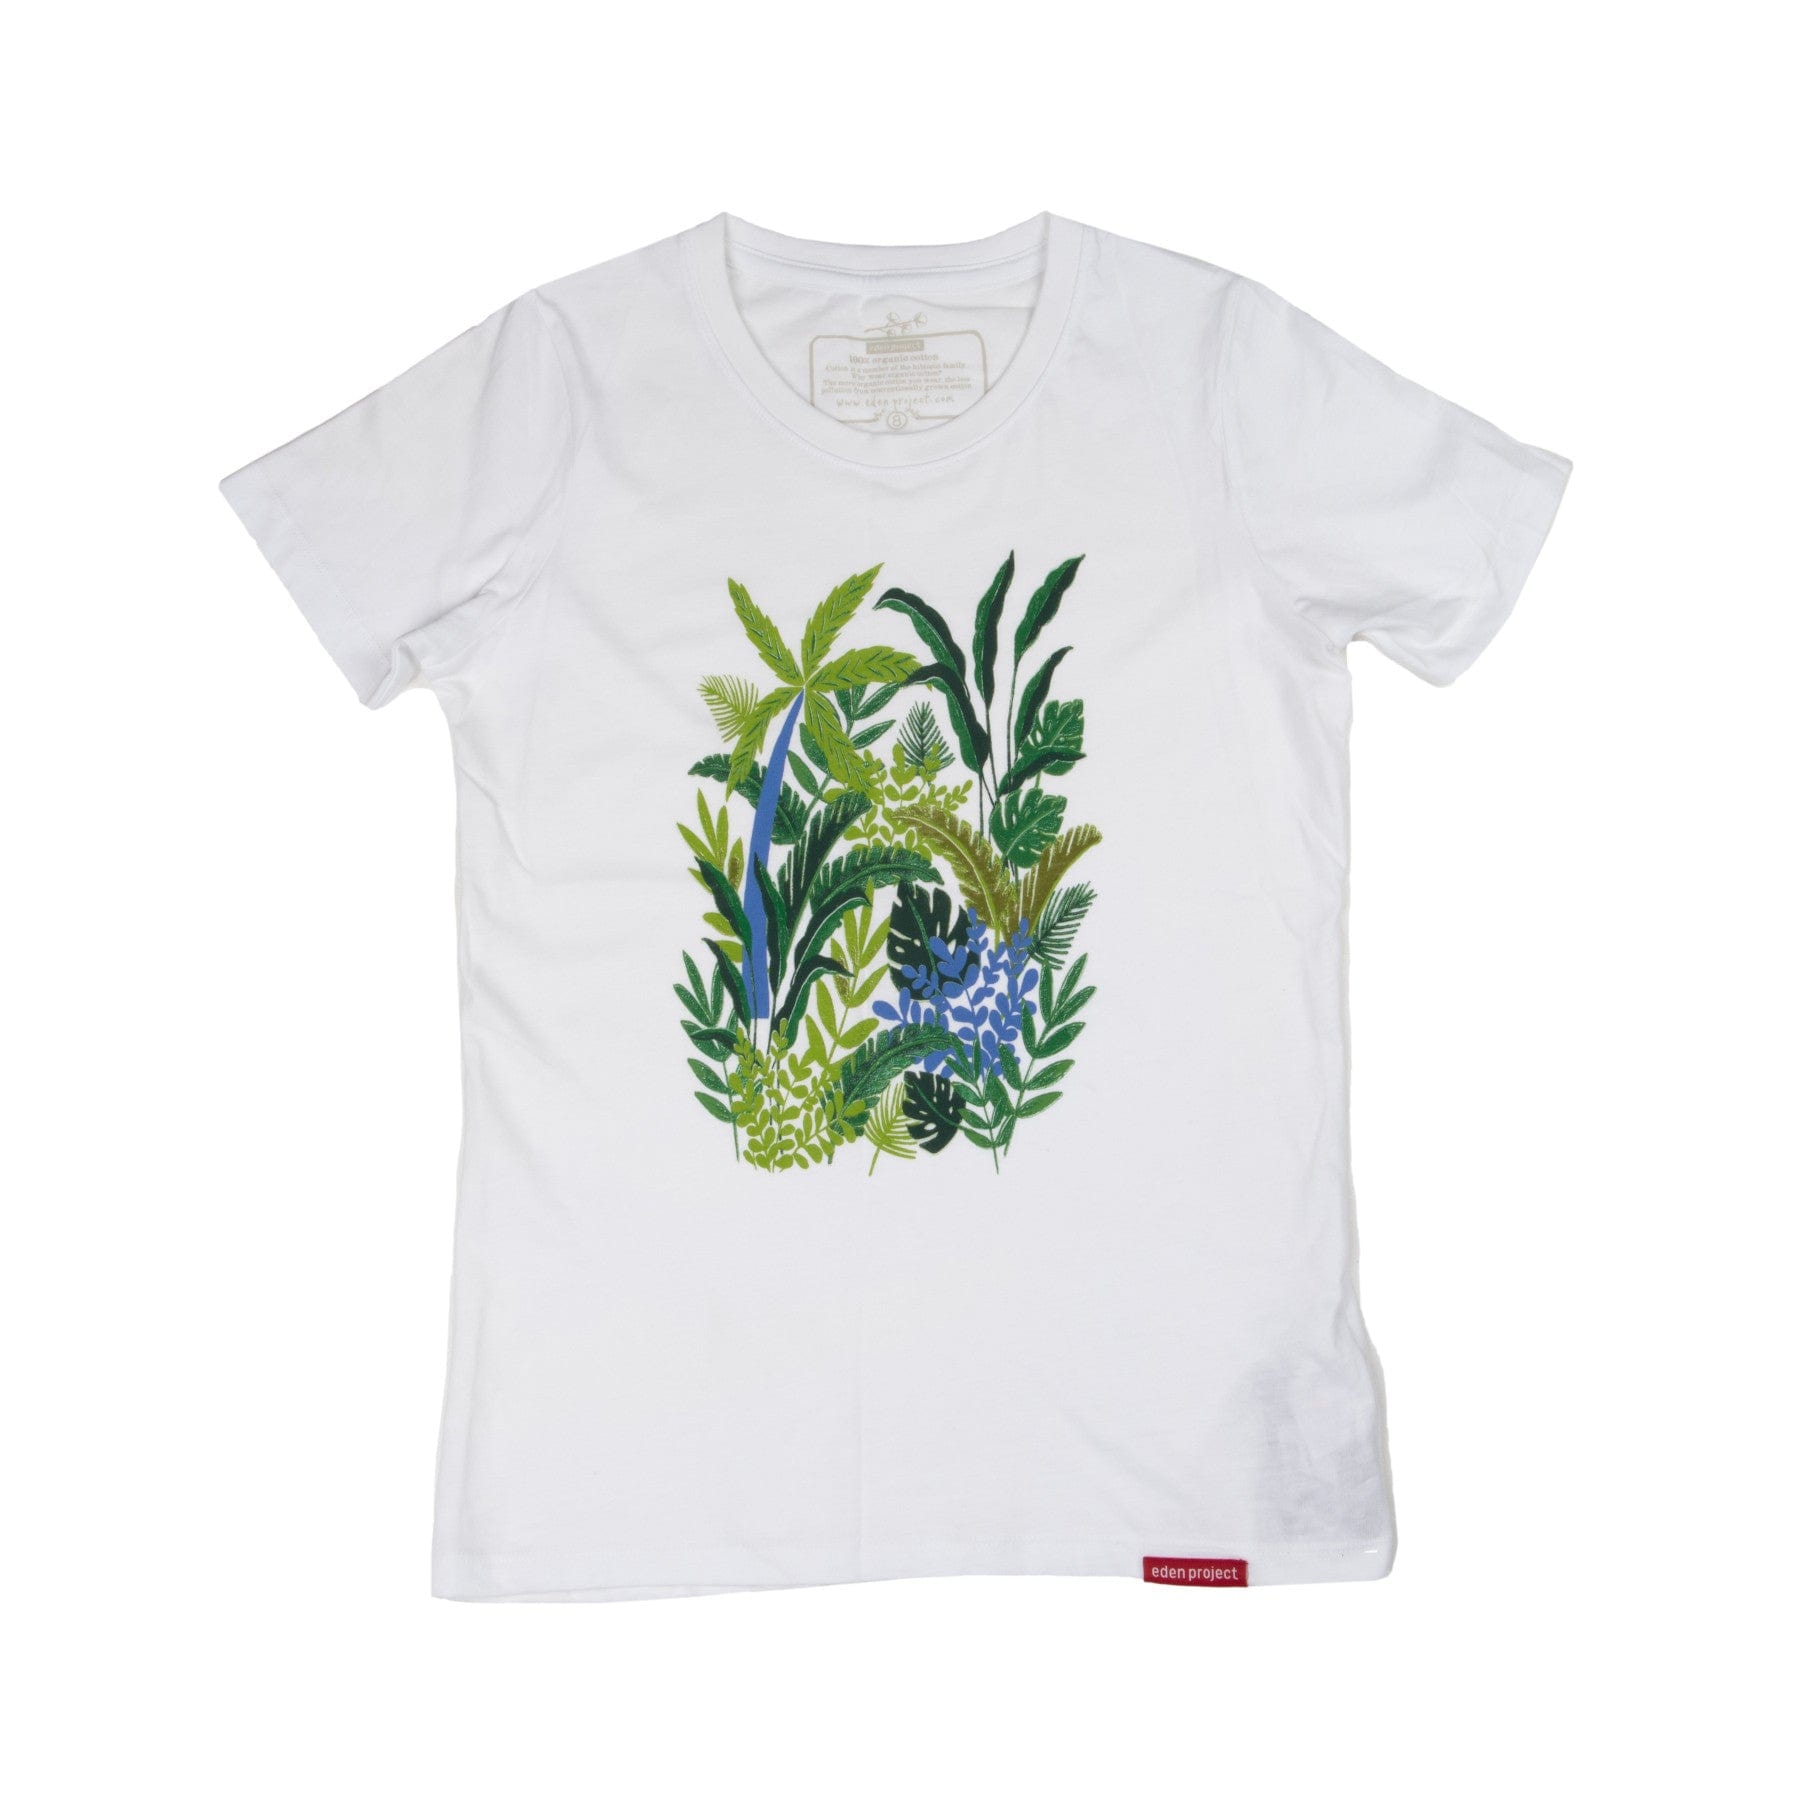 Women's rainforest t-shirt